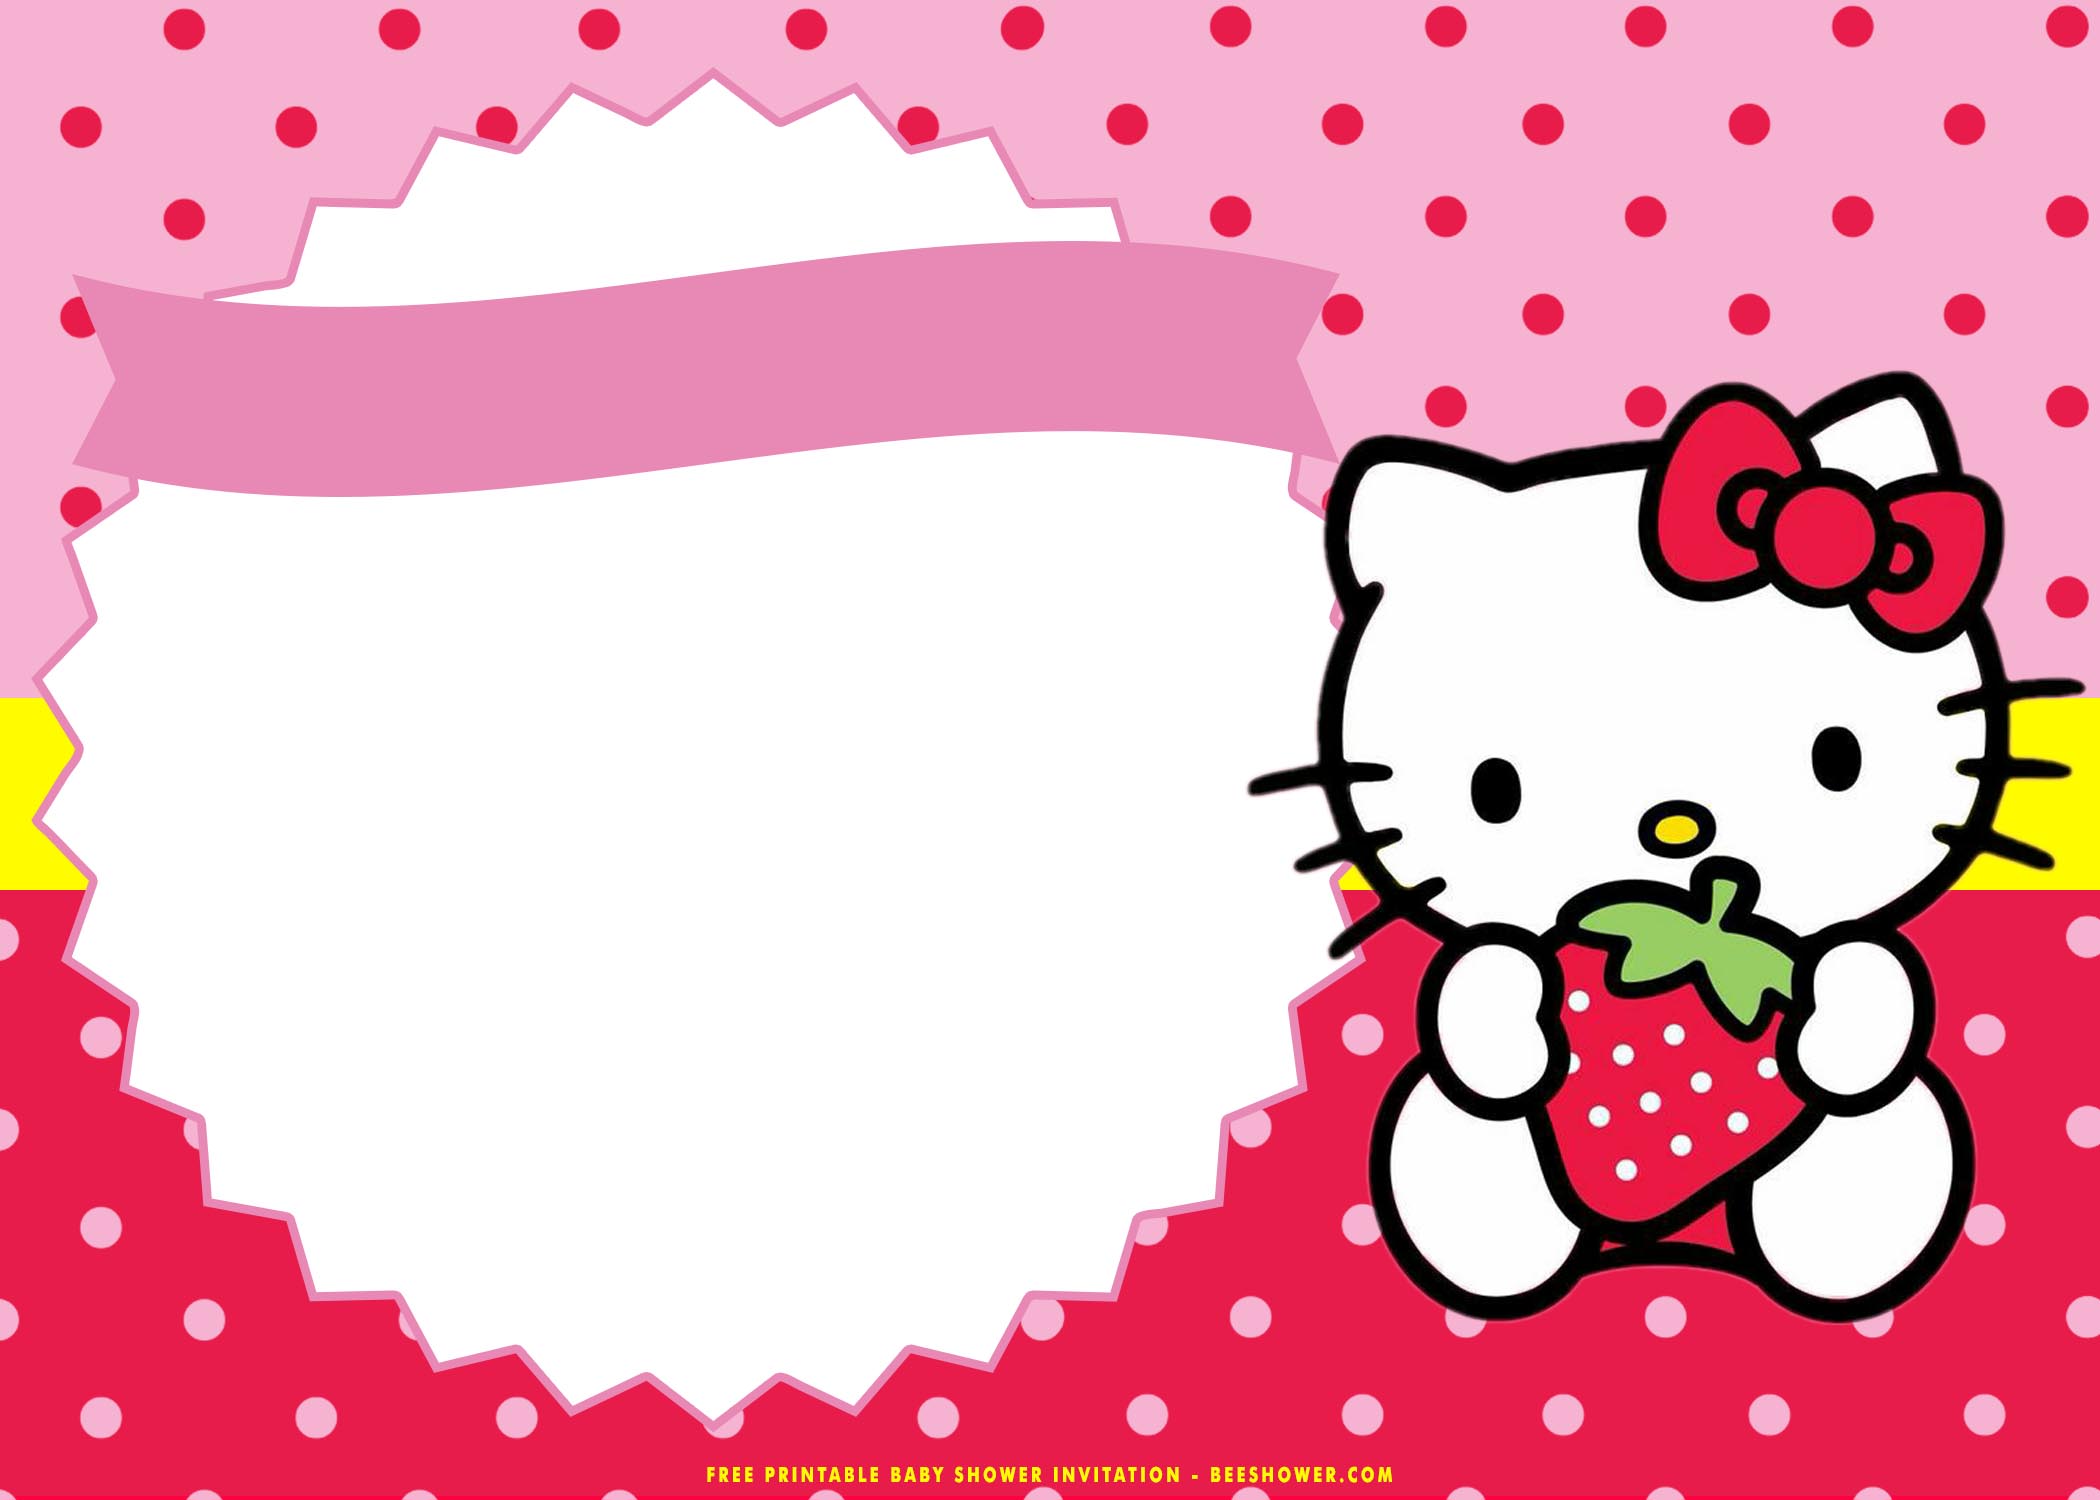 Hello Kitty Birthday Card Printable Free Printable Templates Free